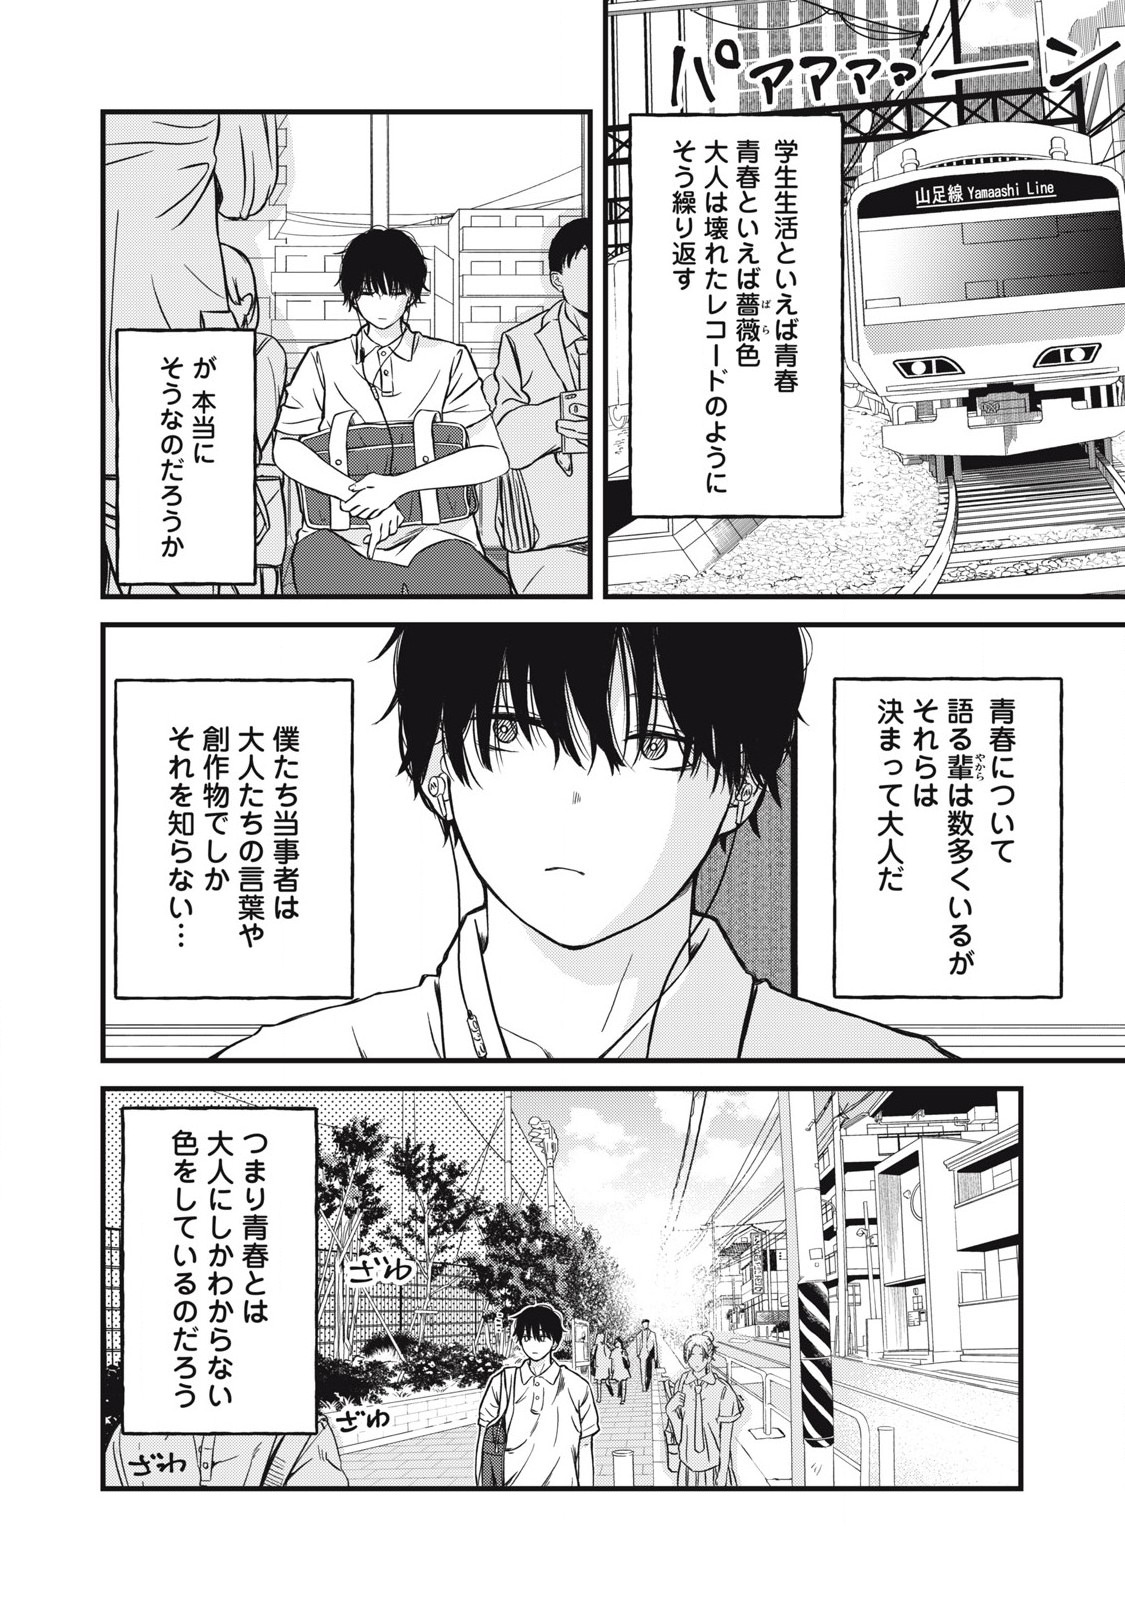 Otona ni Narenai Bokura wa - Chapter 1 - Page 2